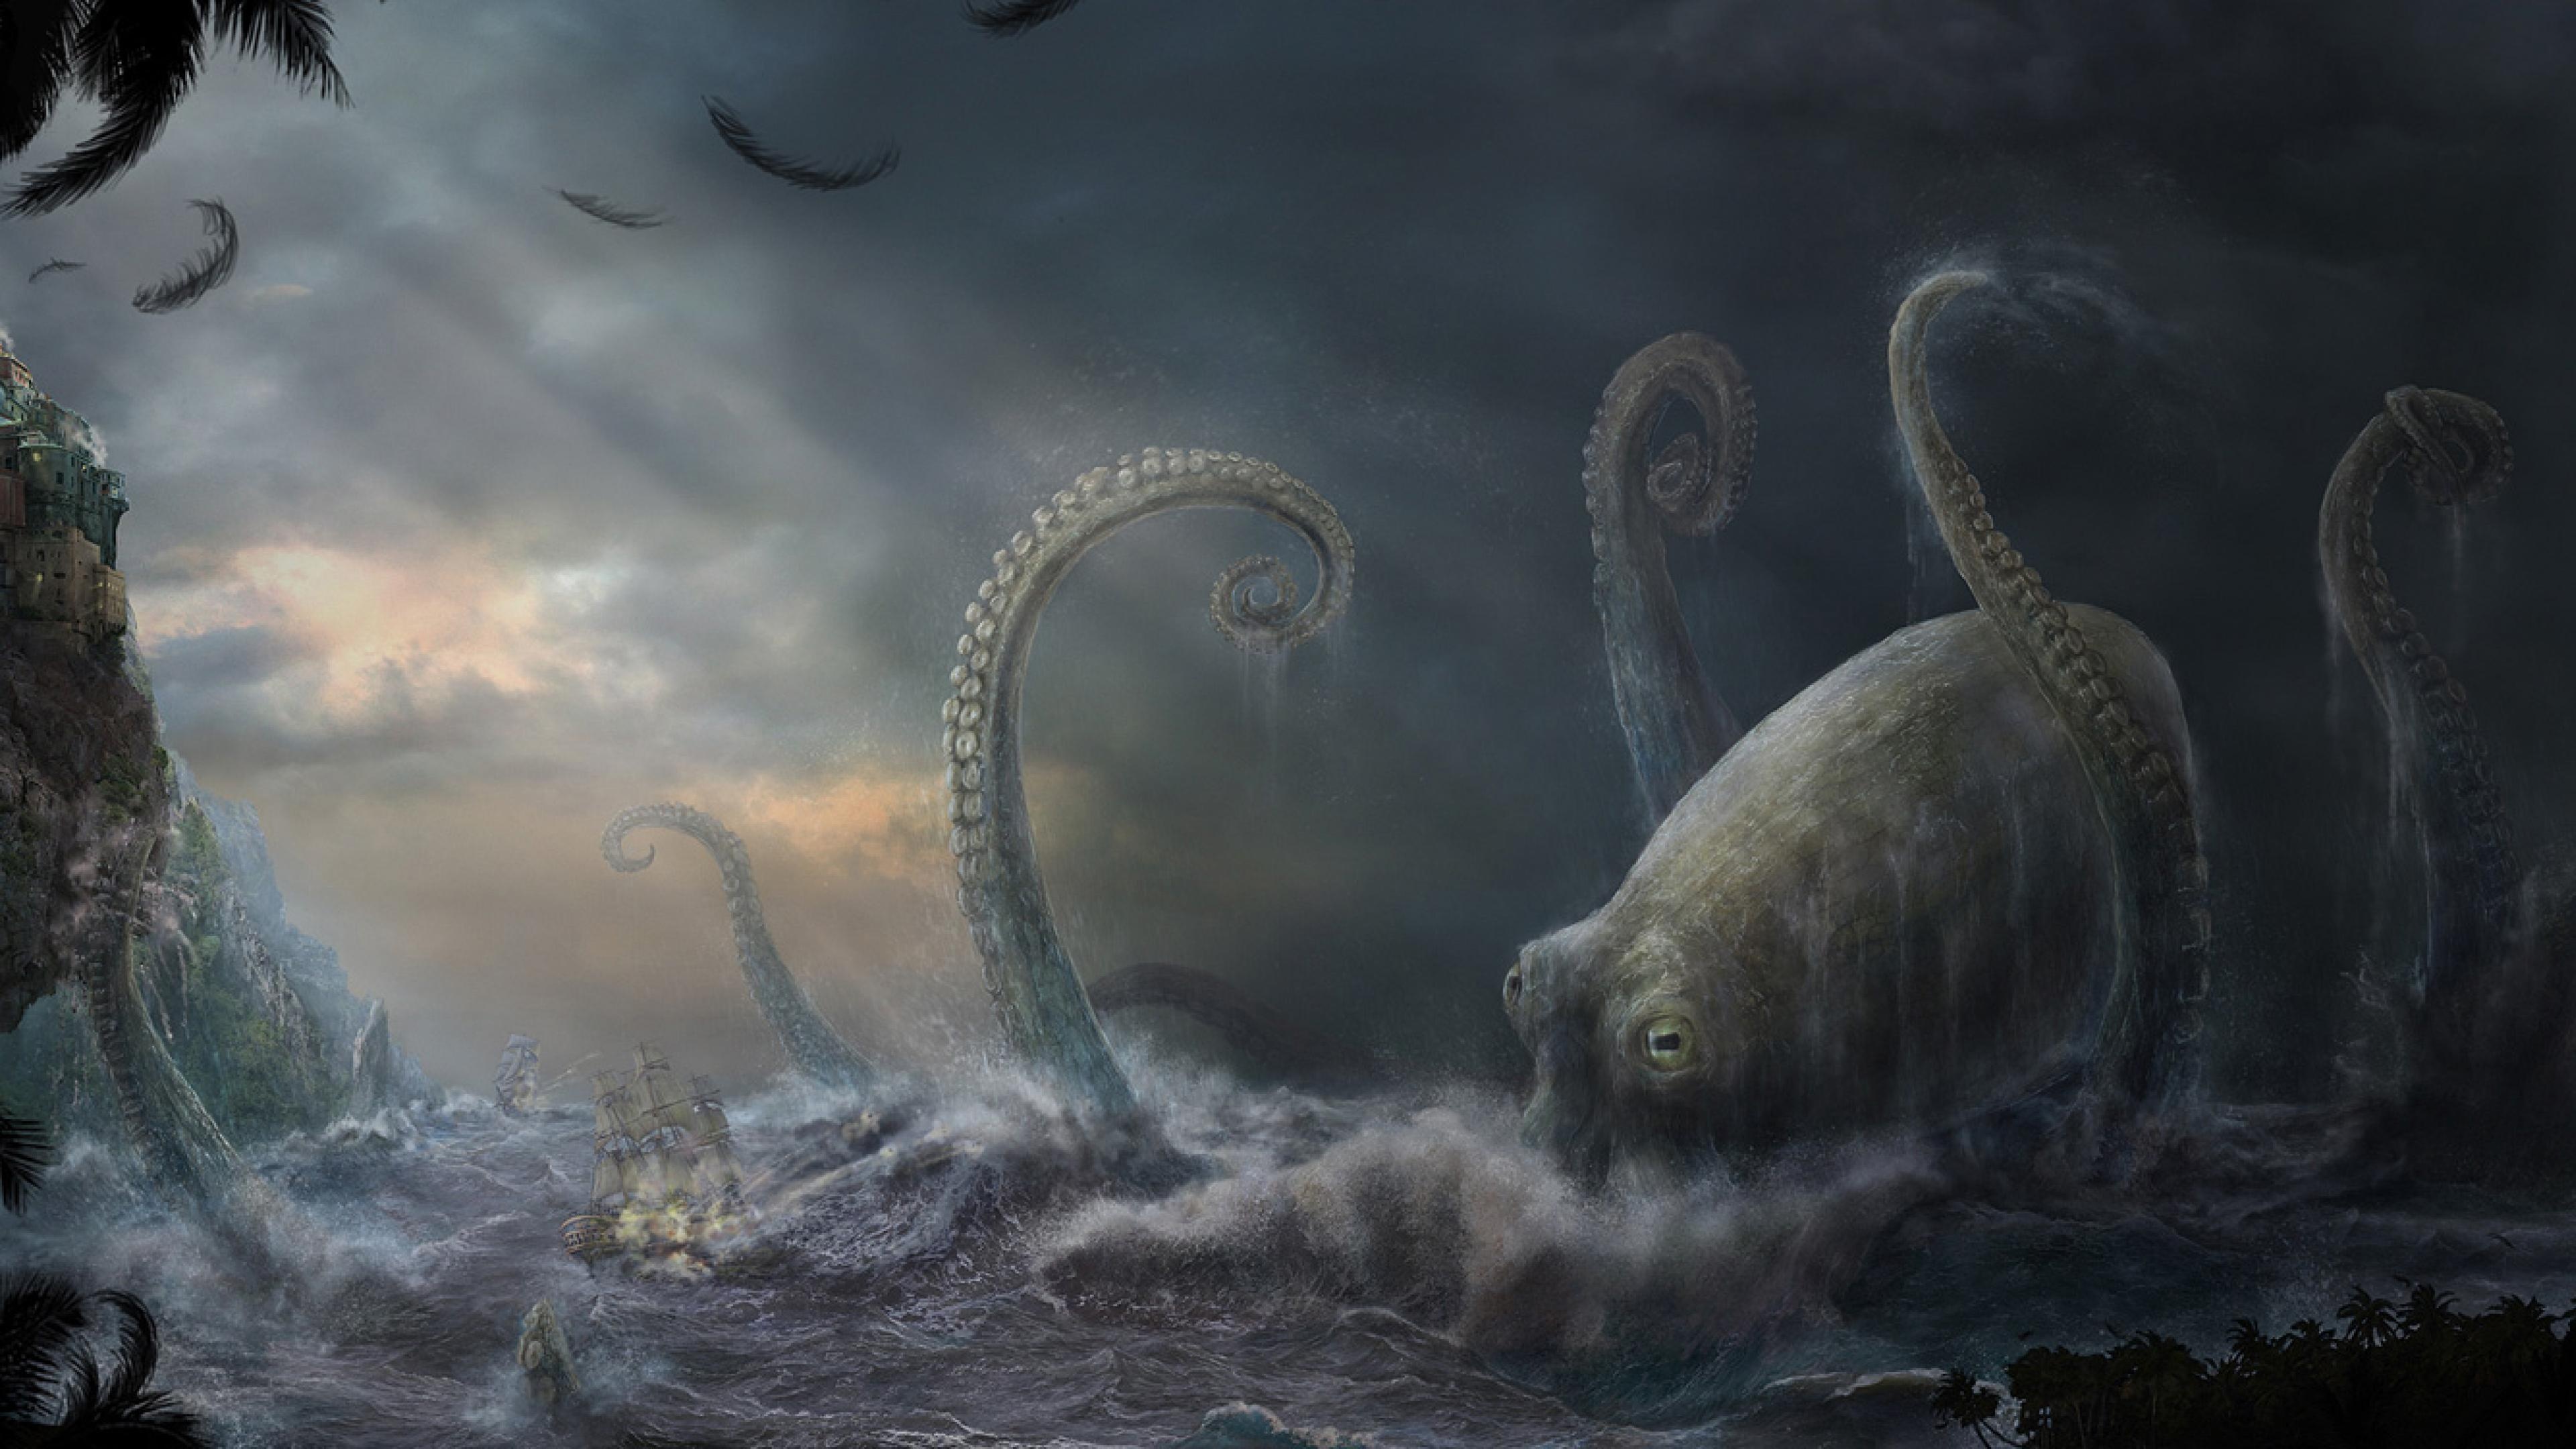 Kraken creature art, Dark fantasy wallpaper, Mysterious sea entity, Mythical monster, 3840x2160 4K Desktop